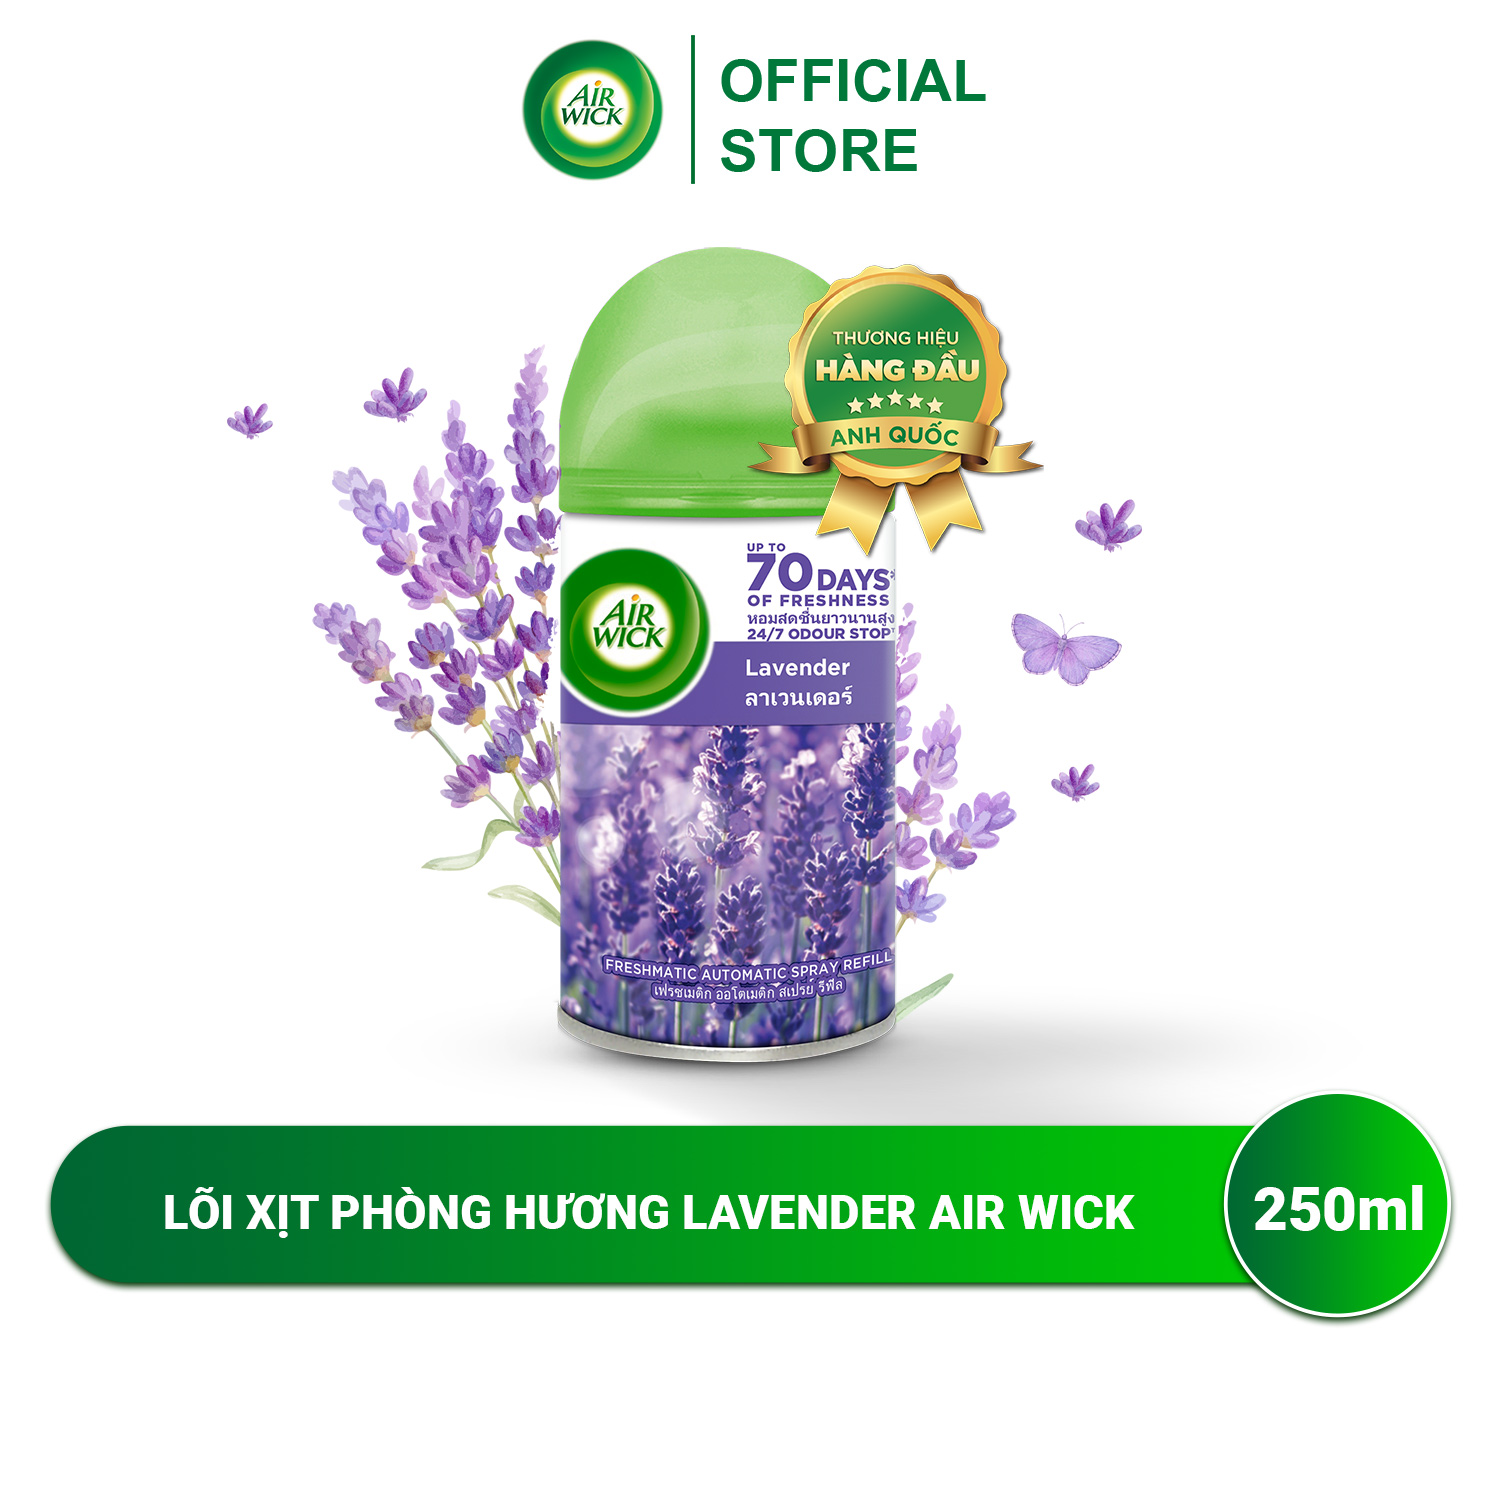 Lõi máy xịt thơm phòng tự động hương Lavender AIRWICK, hương thơm dịu nhẹ, thư giãn, giúp giảm căng thẳng 250ml